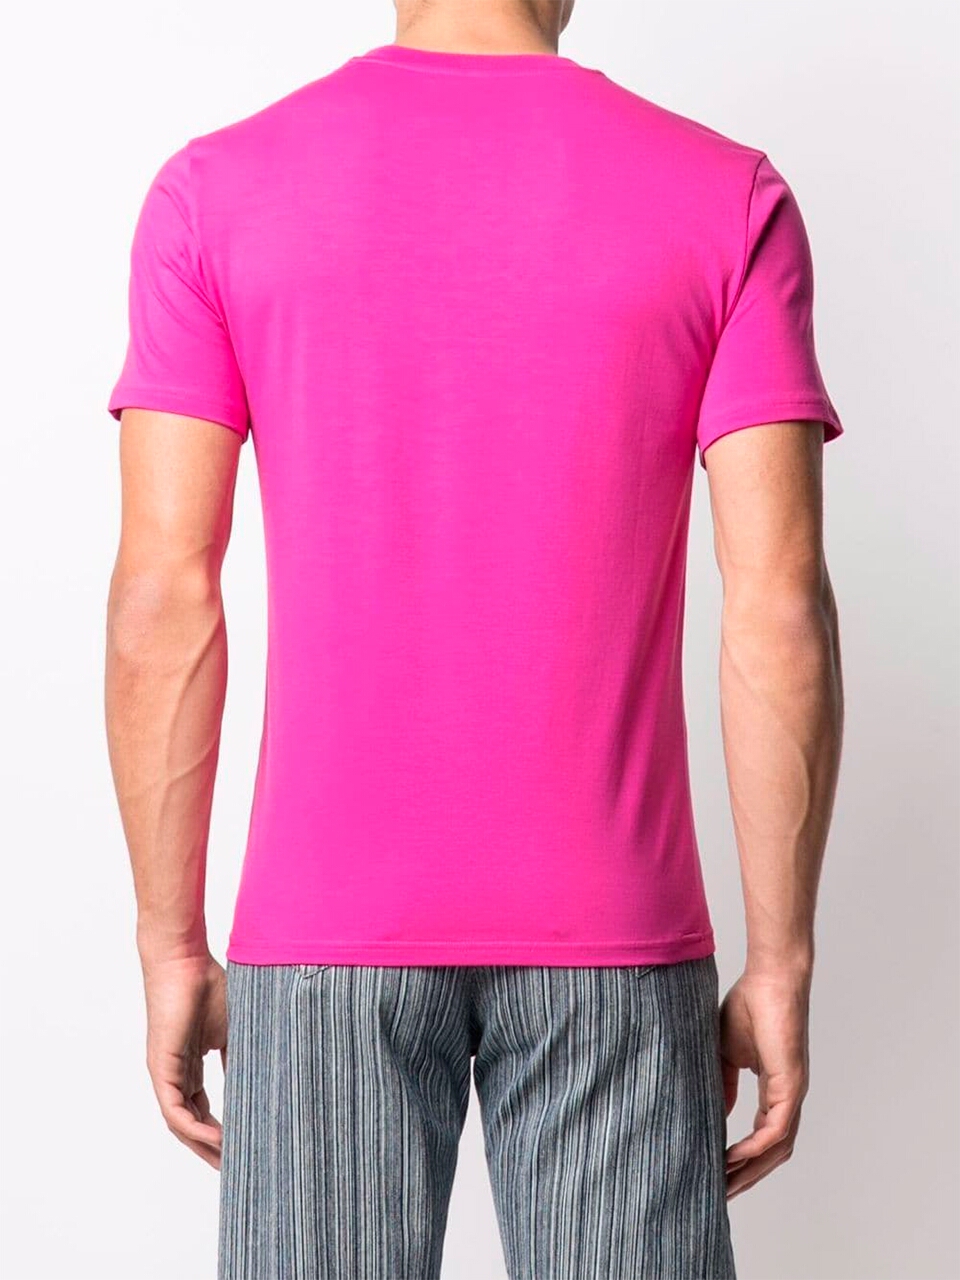 Imagem de: Camiseta Moschino Rosa com Logo Preto